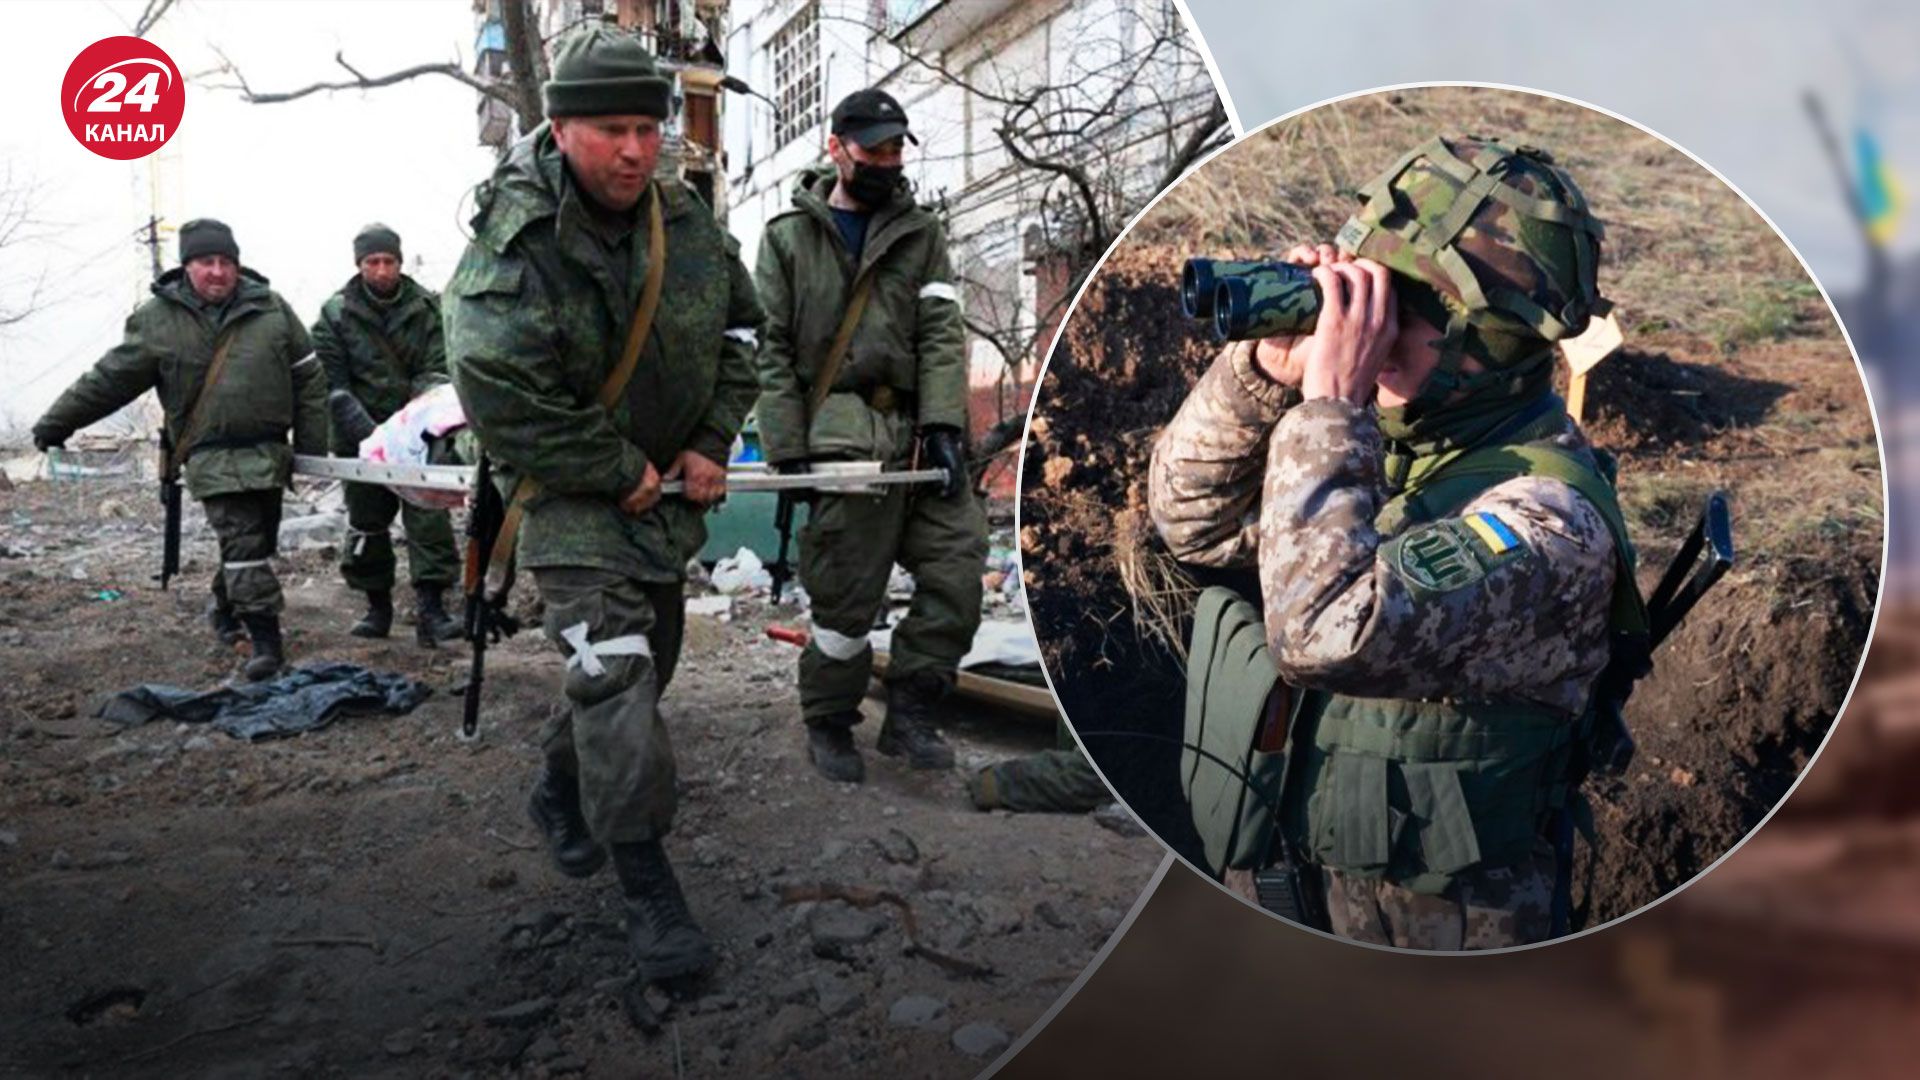 У России нет кадров в армии - бросает десантников на оборону - 24 Канал